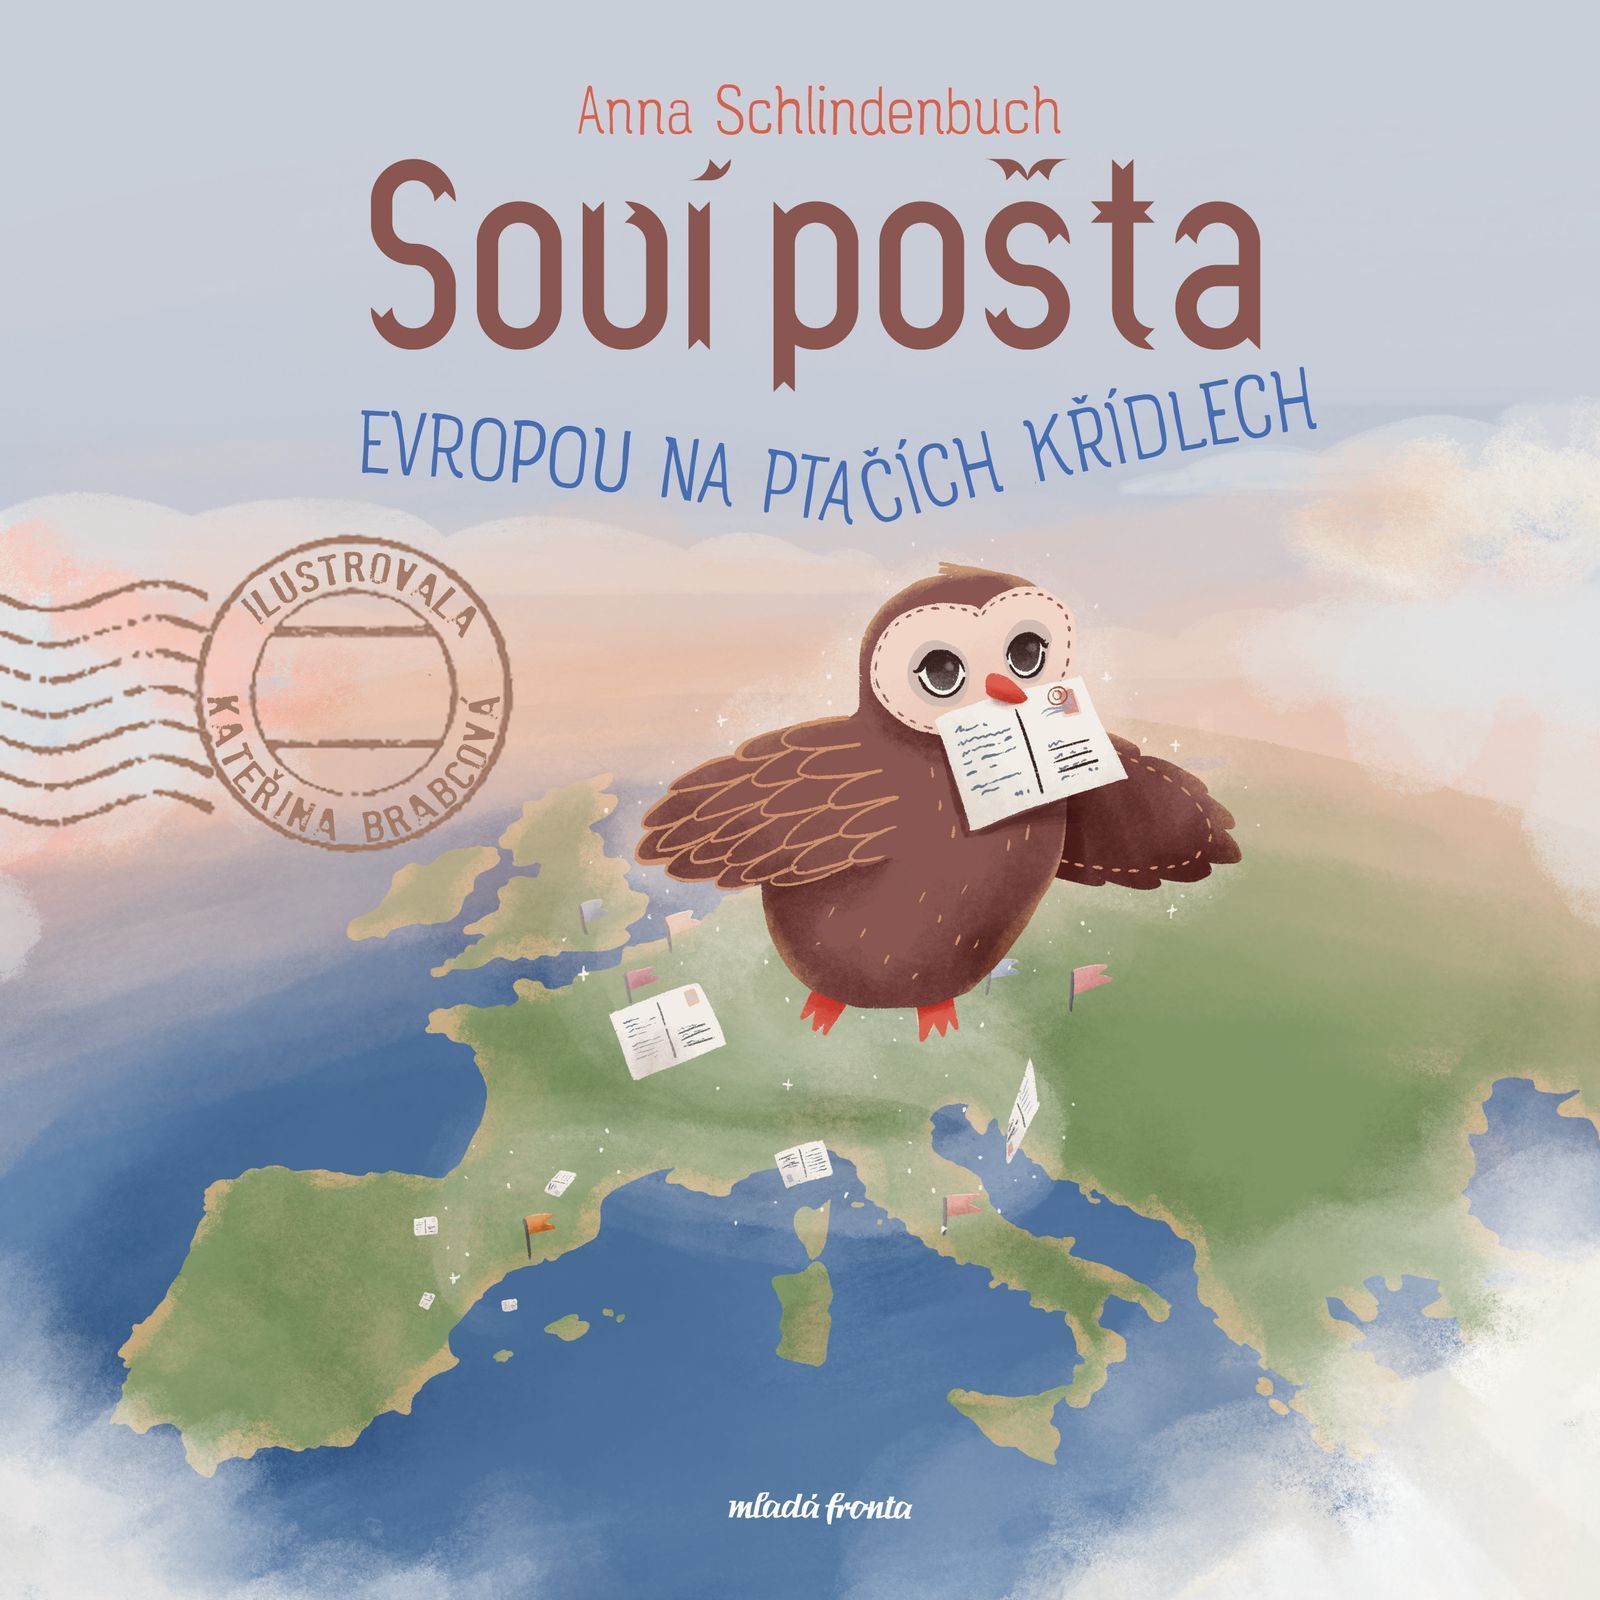 Postcrosserka Anna Schlindenbuch